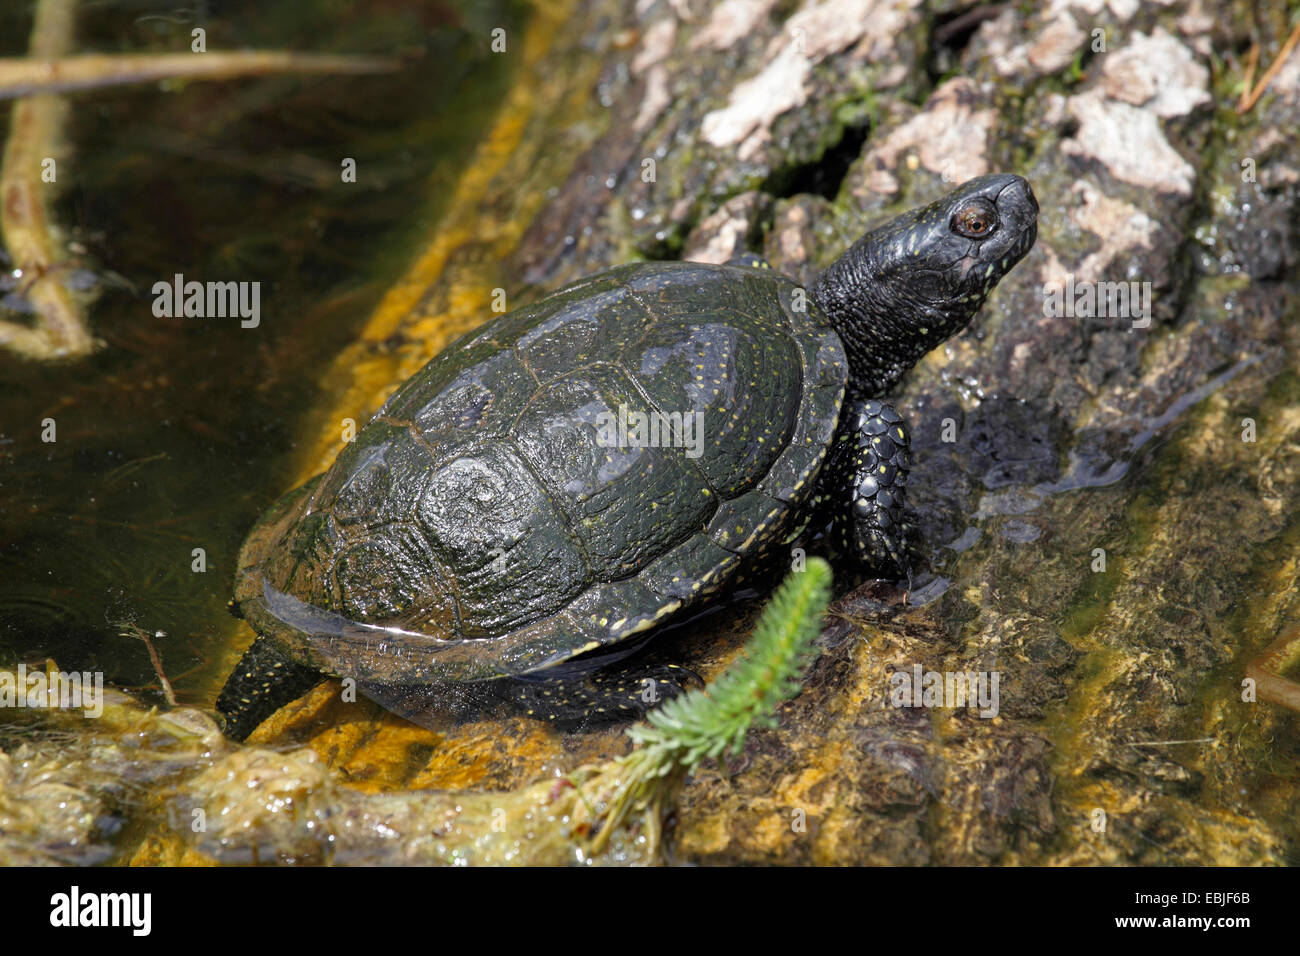 European pond terrapin, European pond turtle, European pond tortoise (Emys orbicularis), at the bank on birch trunk Stock Photo